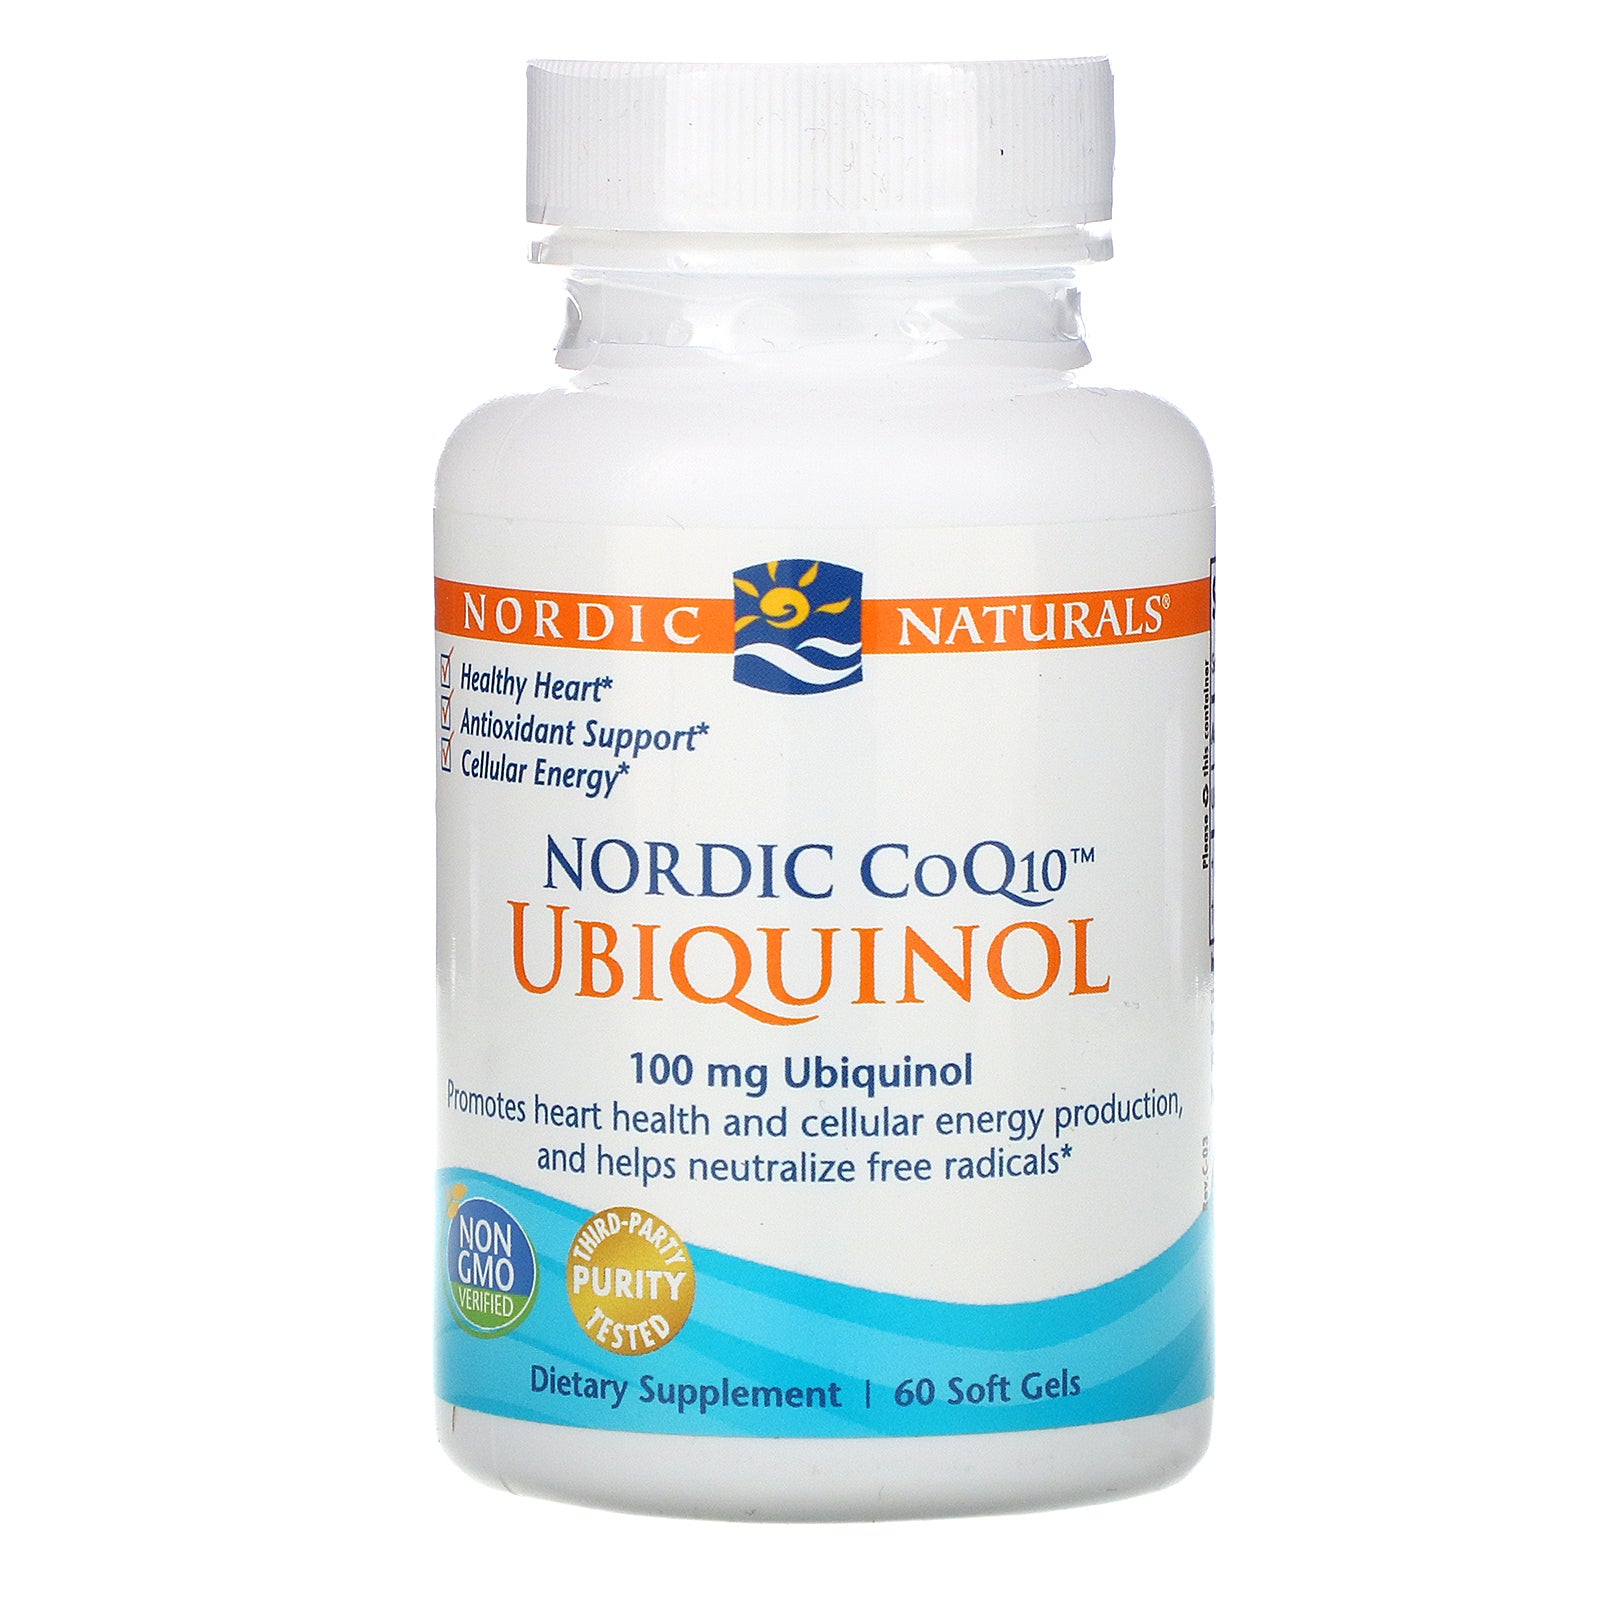 Nordic Naturals, Ubiquinol, Nordic CoQ10, 100 mg, 60 Soft Gels